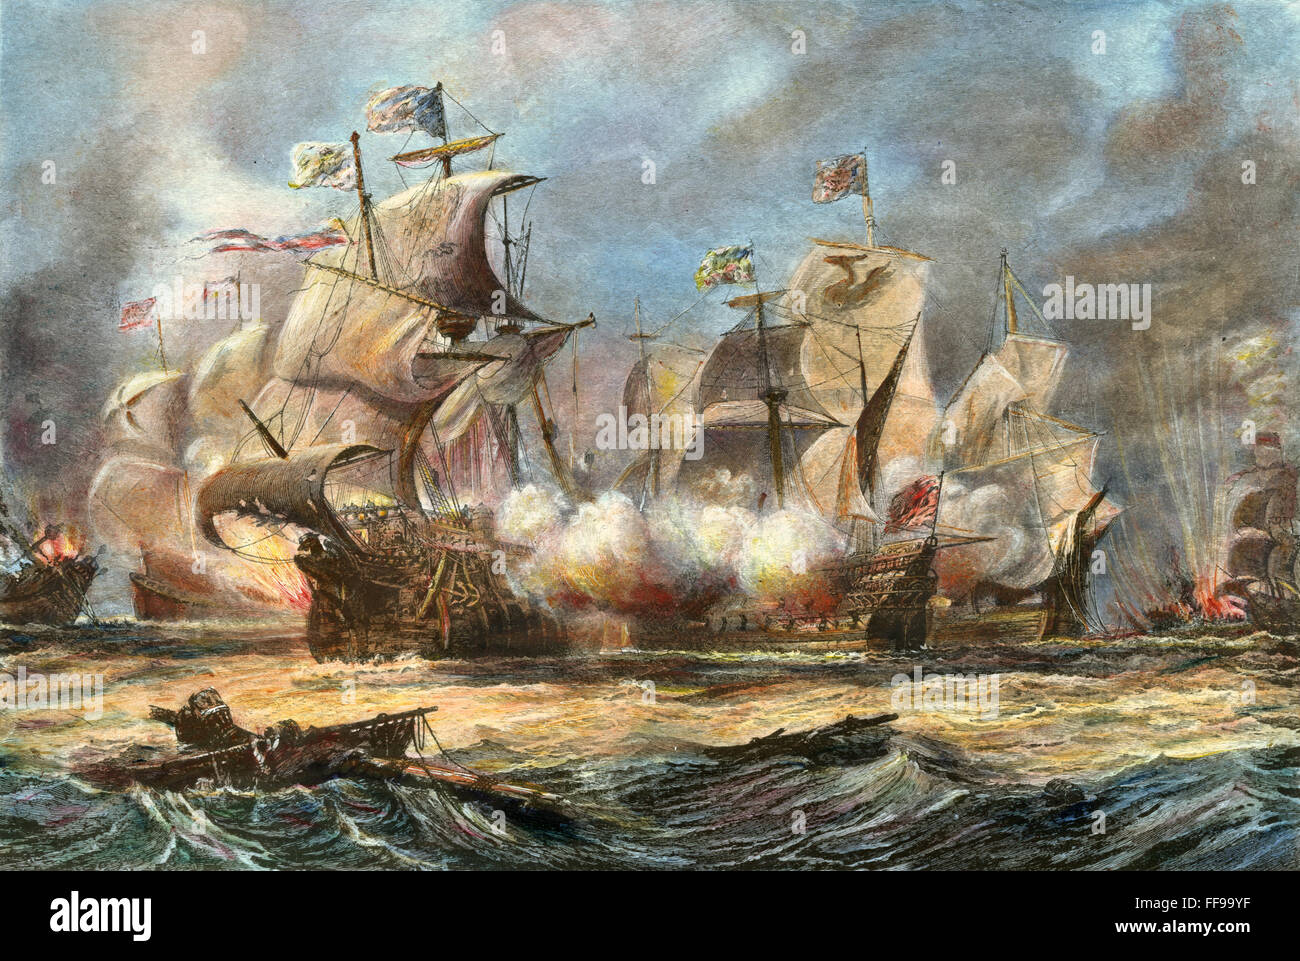 L'Armada espagnole, 1588. /Nla 'Vanguard' attaquer l'Armada espagnole en 1588. La gravure de ligne, 19e siècle. Banque D'Images